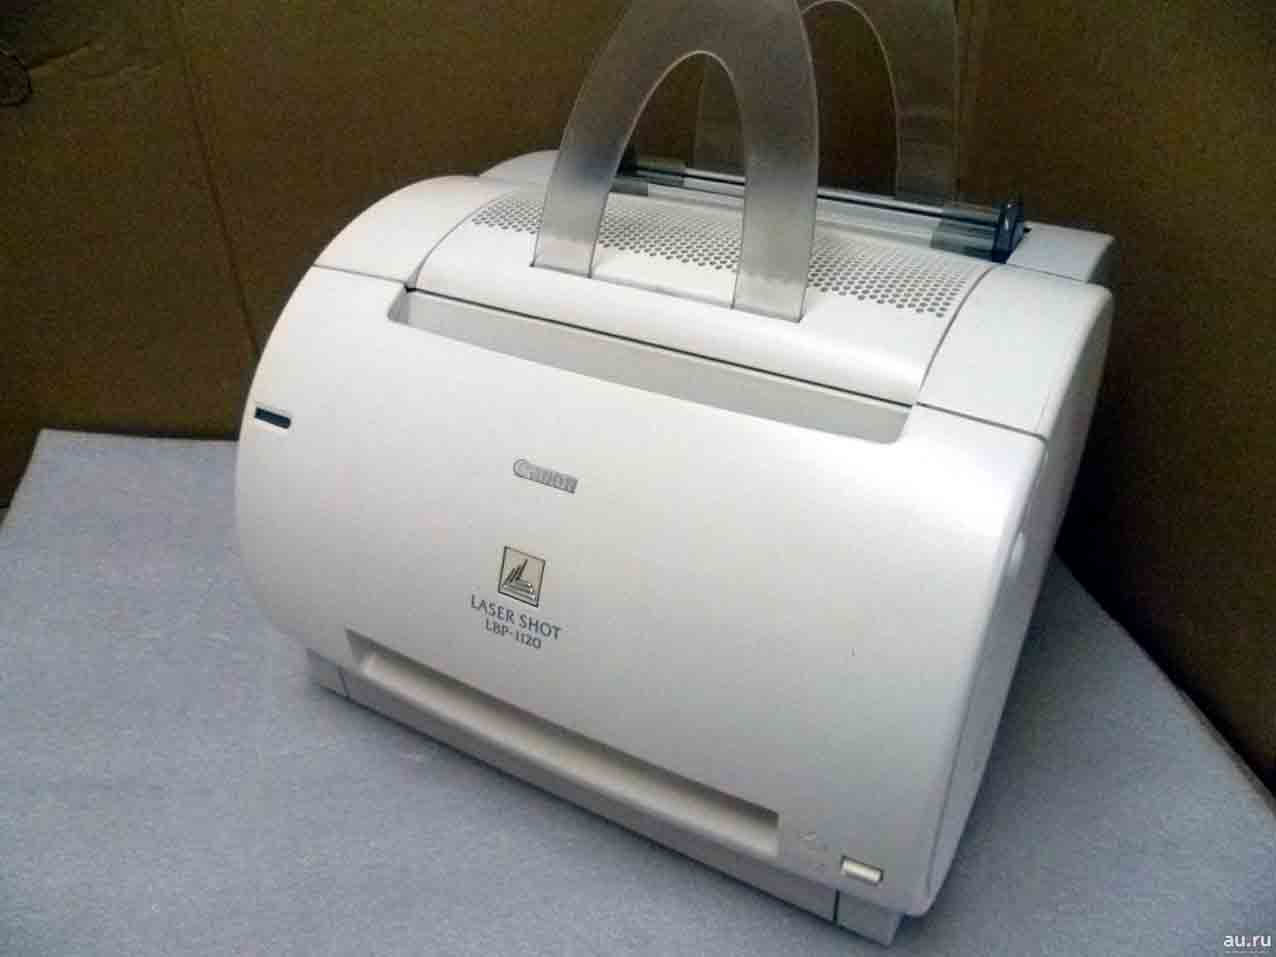 Лазерный принтер Canon LBP-1120